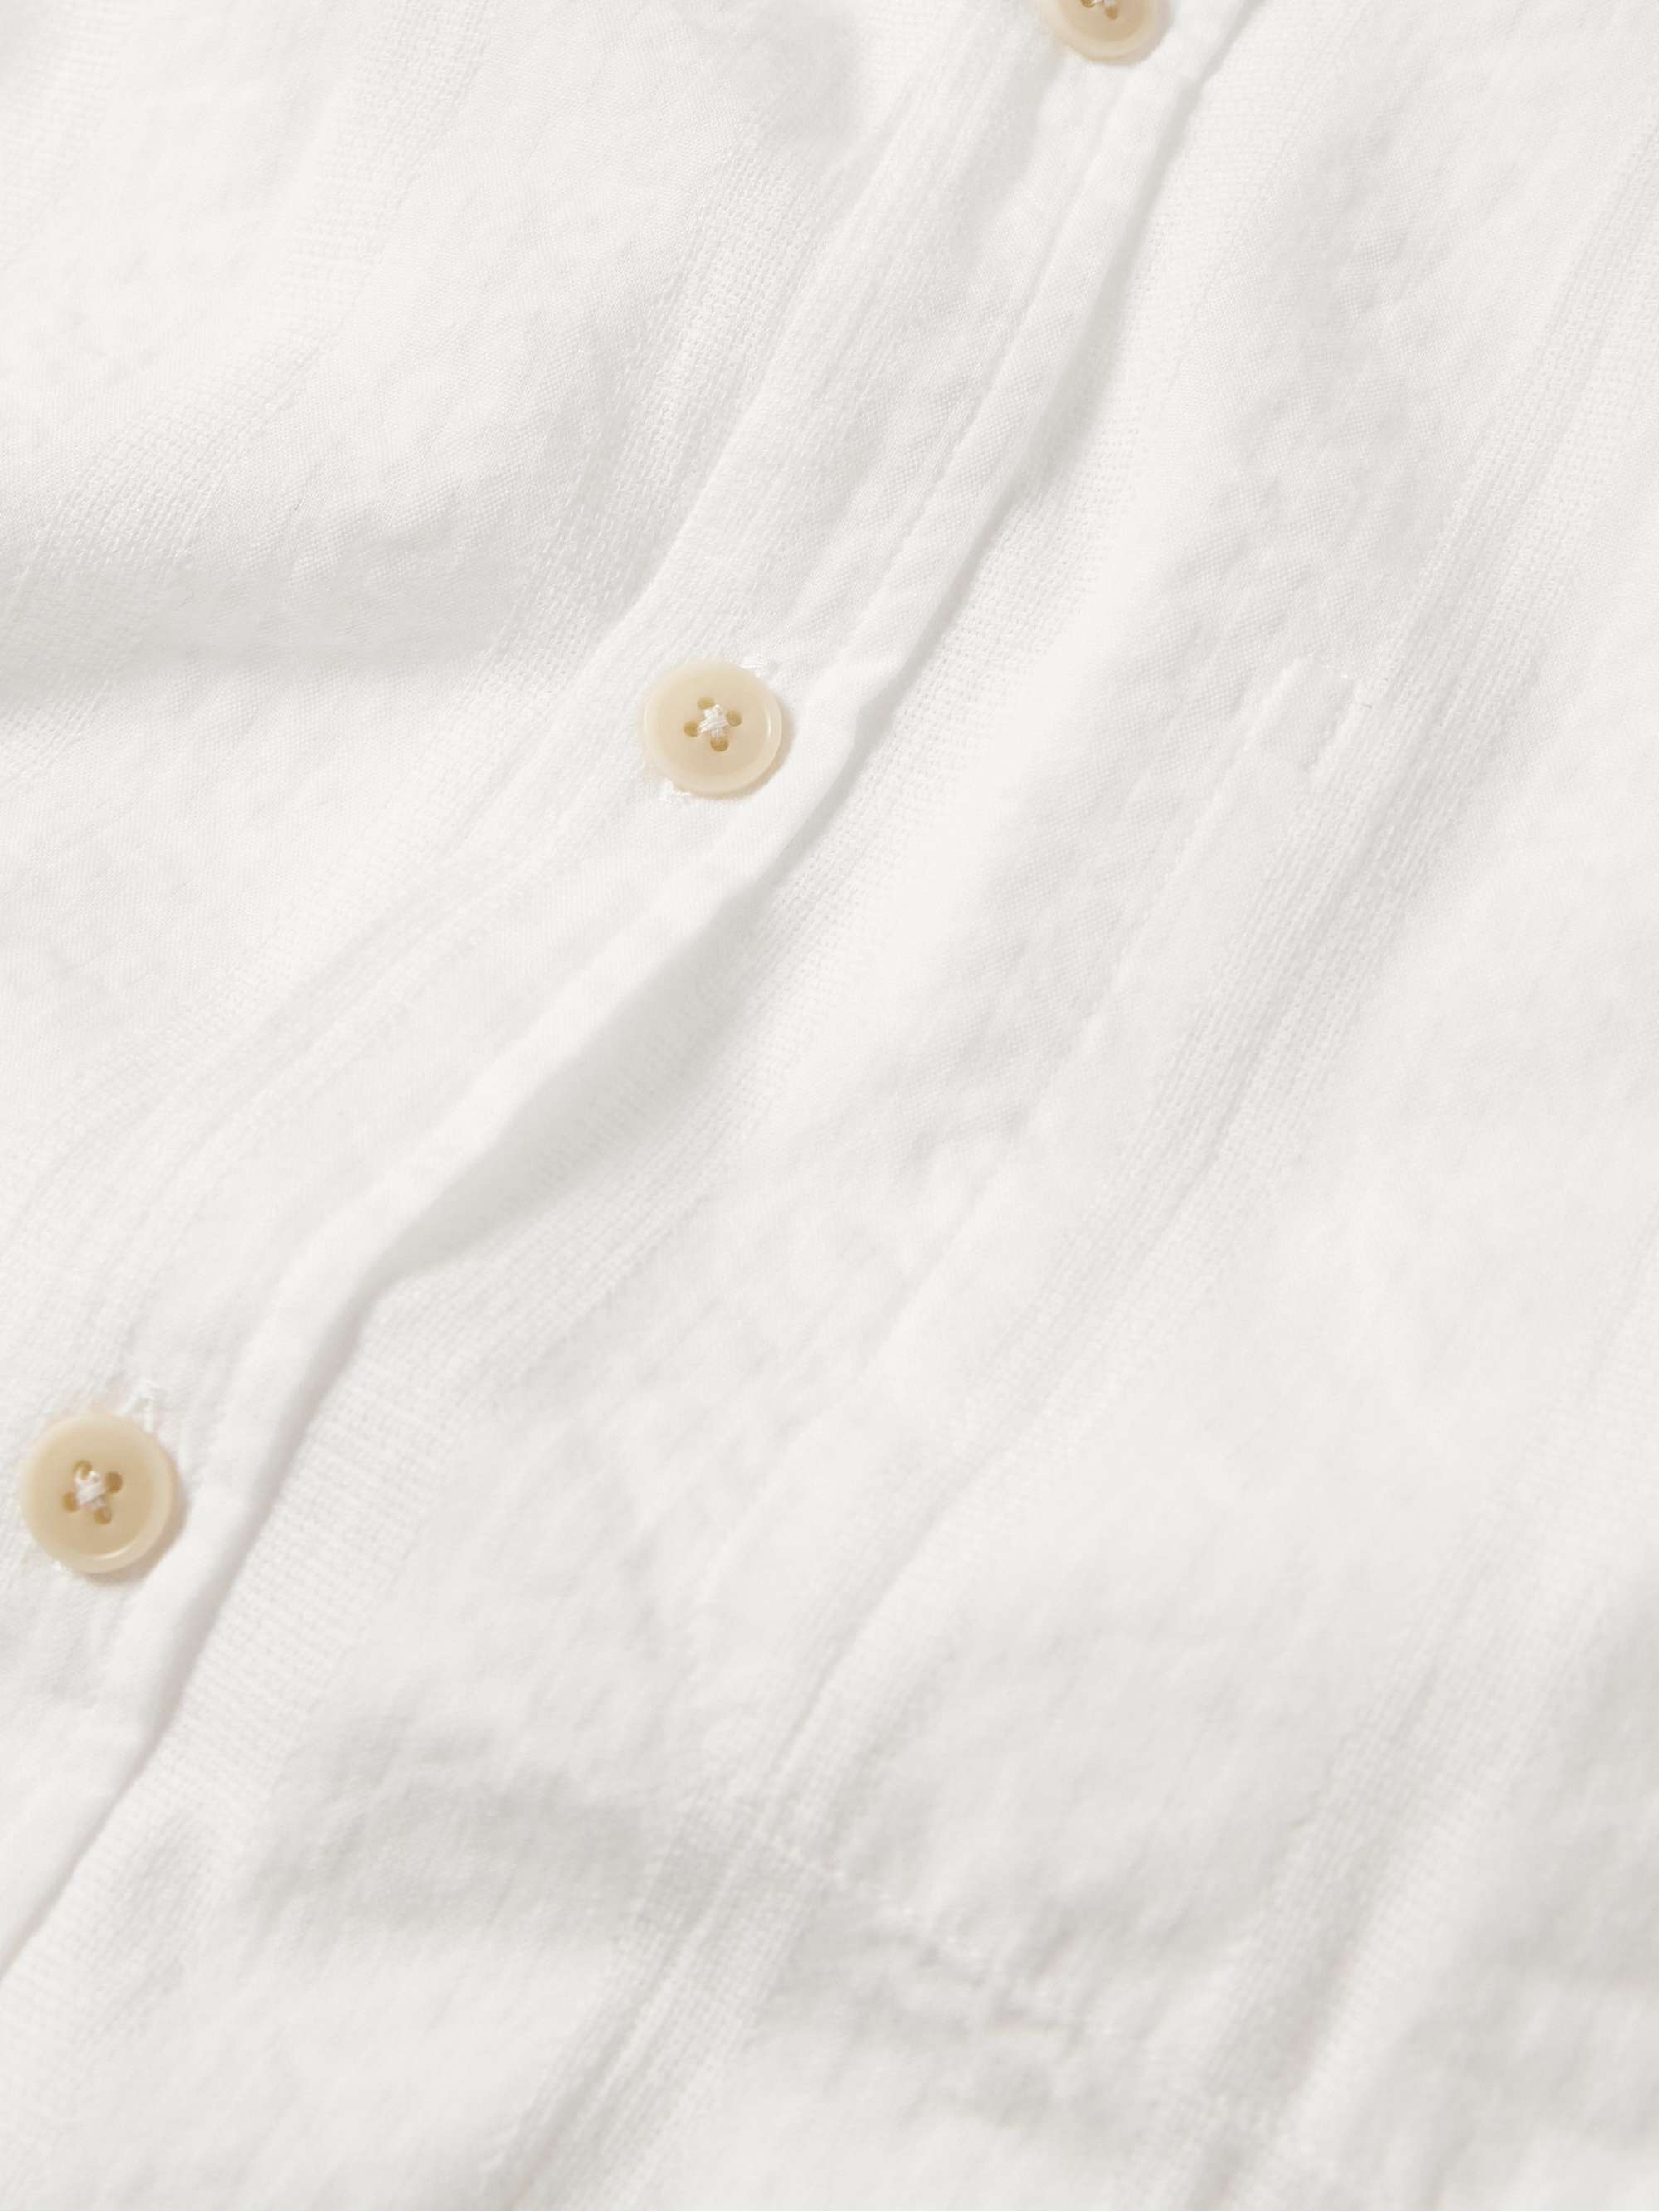 OLIVER SPENCER New York Striped Organic Cotton Shirt for Men | MR PORTER